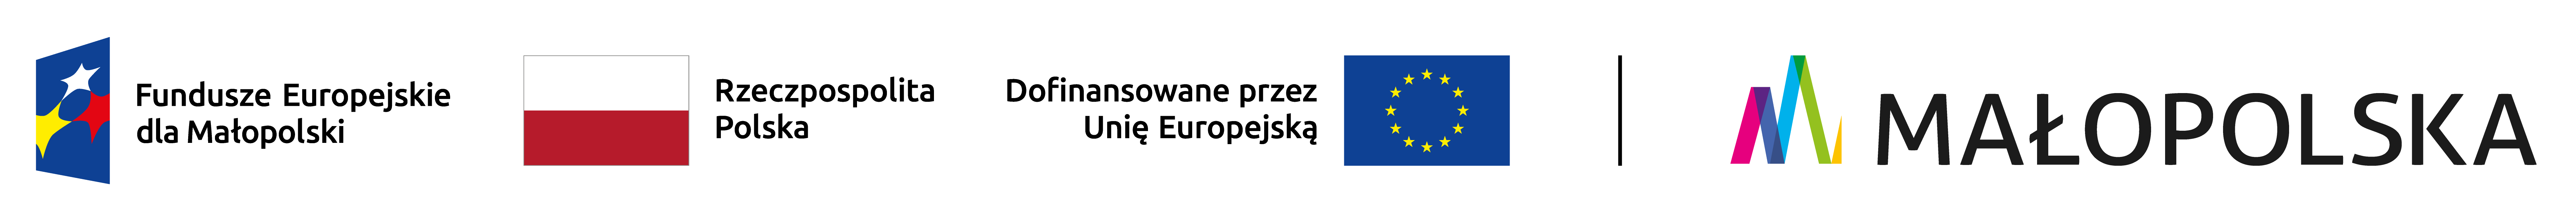 Fundusze Europejskie dla Małopolski, Rzeczpospolita Polska, Dofinansowane przez Unię Europejską, MAŁOPOLSKA